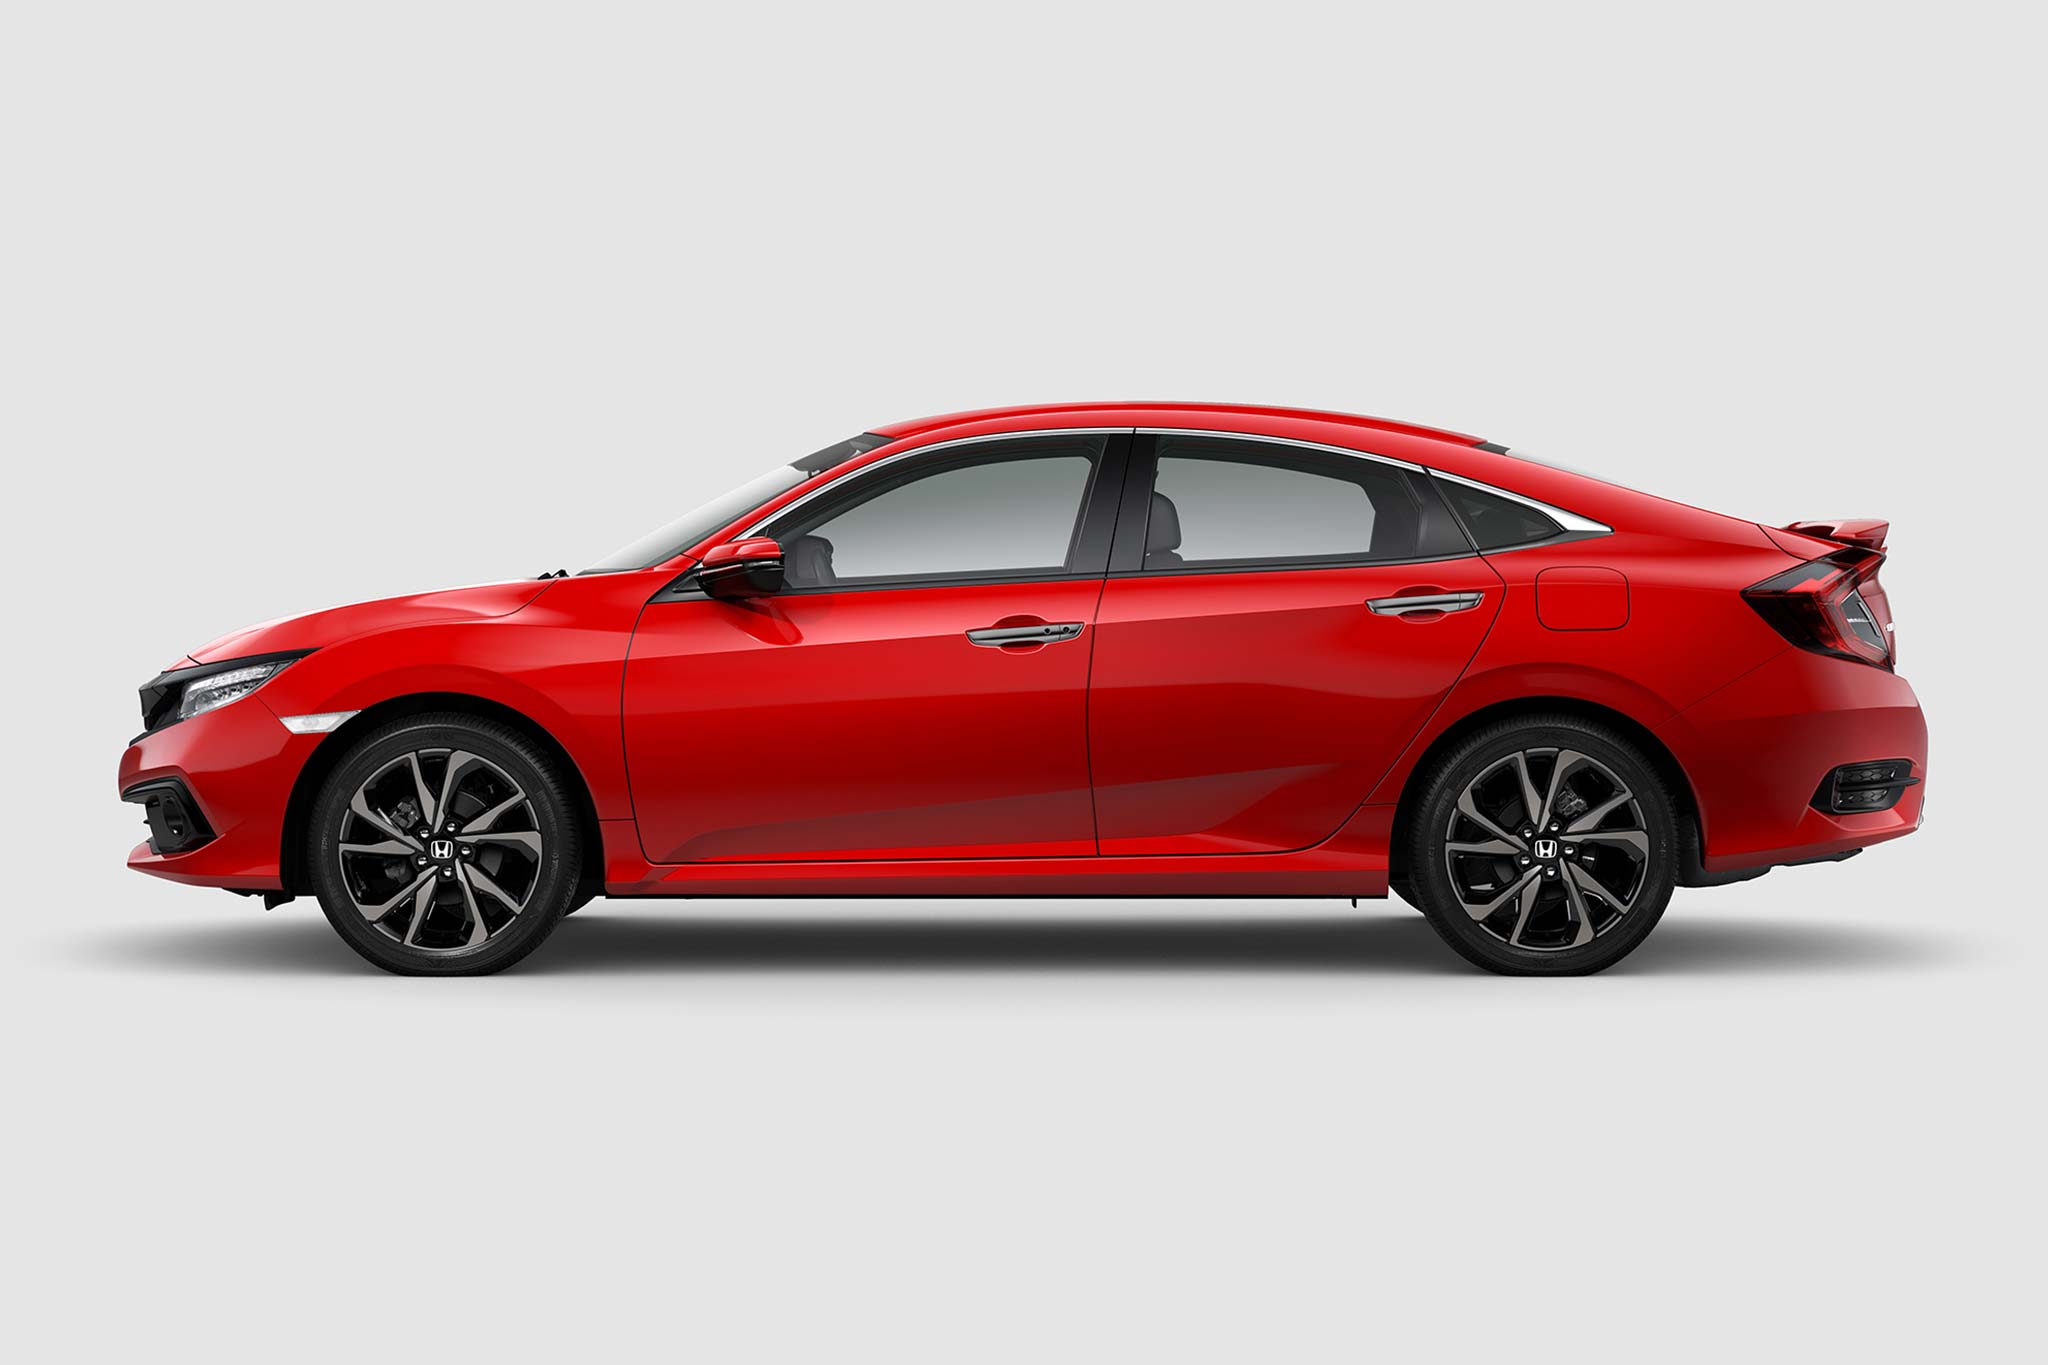 Mua Bán Xe Honda Civic 2019 Màu Đỏ Cũ Giá Rẻ Chính Chủ